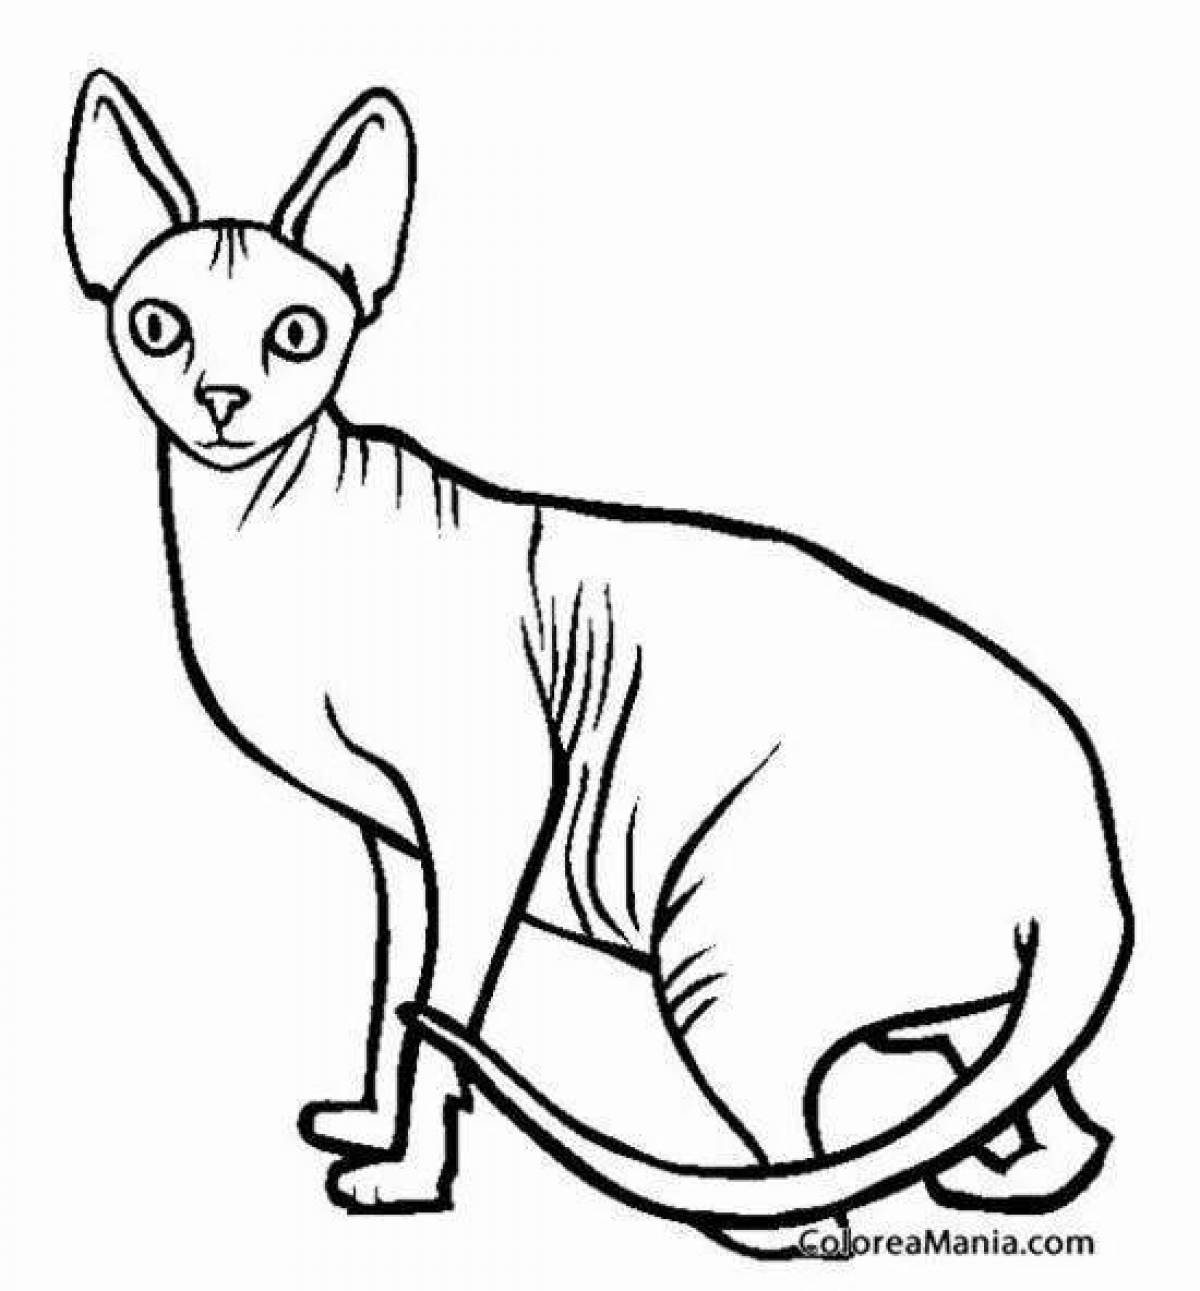 Восхитительная раскраска кошки-сфинкса